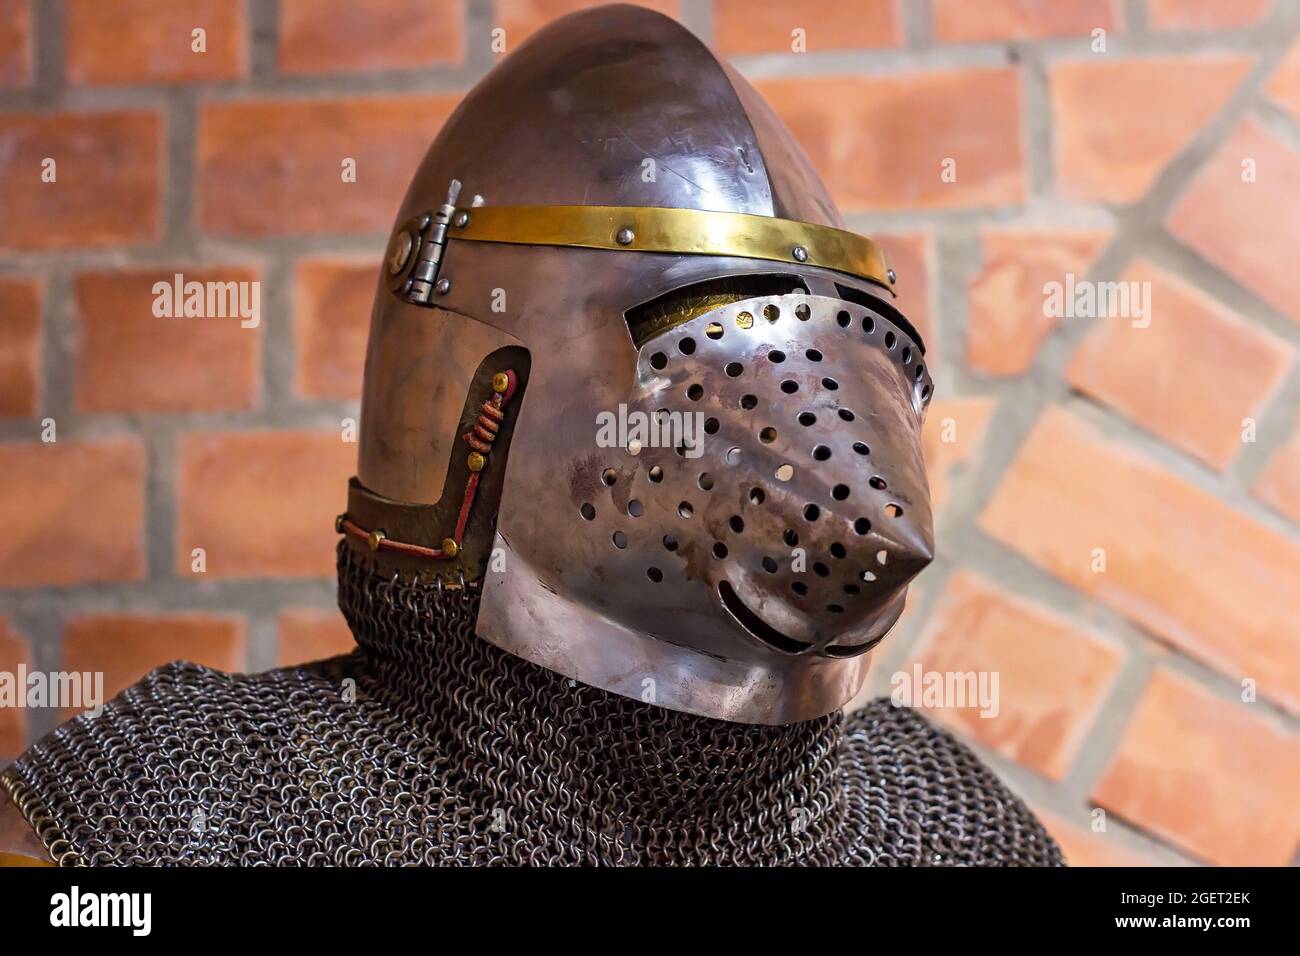 Armure de casque de chevalier de fer médiéval ancien pour la protection des guerriers anciens au combat. Équipement de défense en métal lourd traditionnel pour les chasseurs d'autrefois Banque D'Images